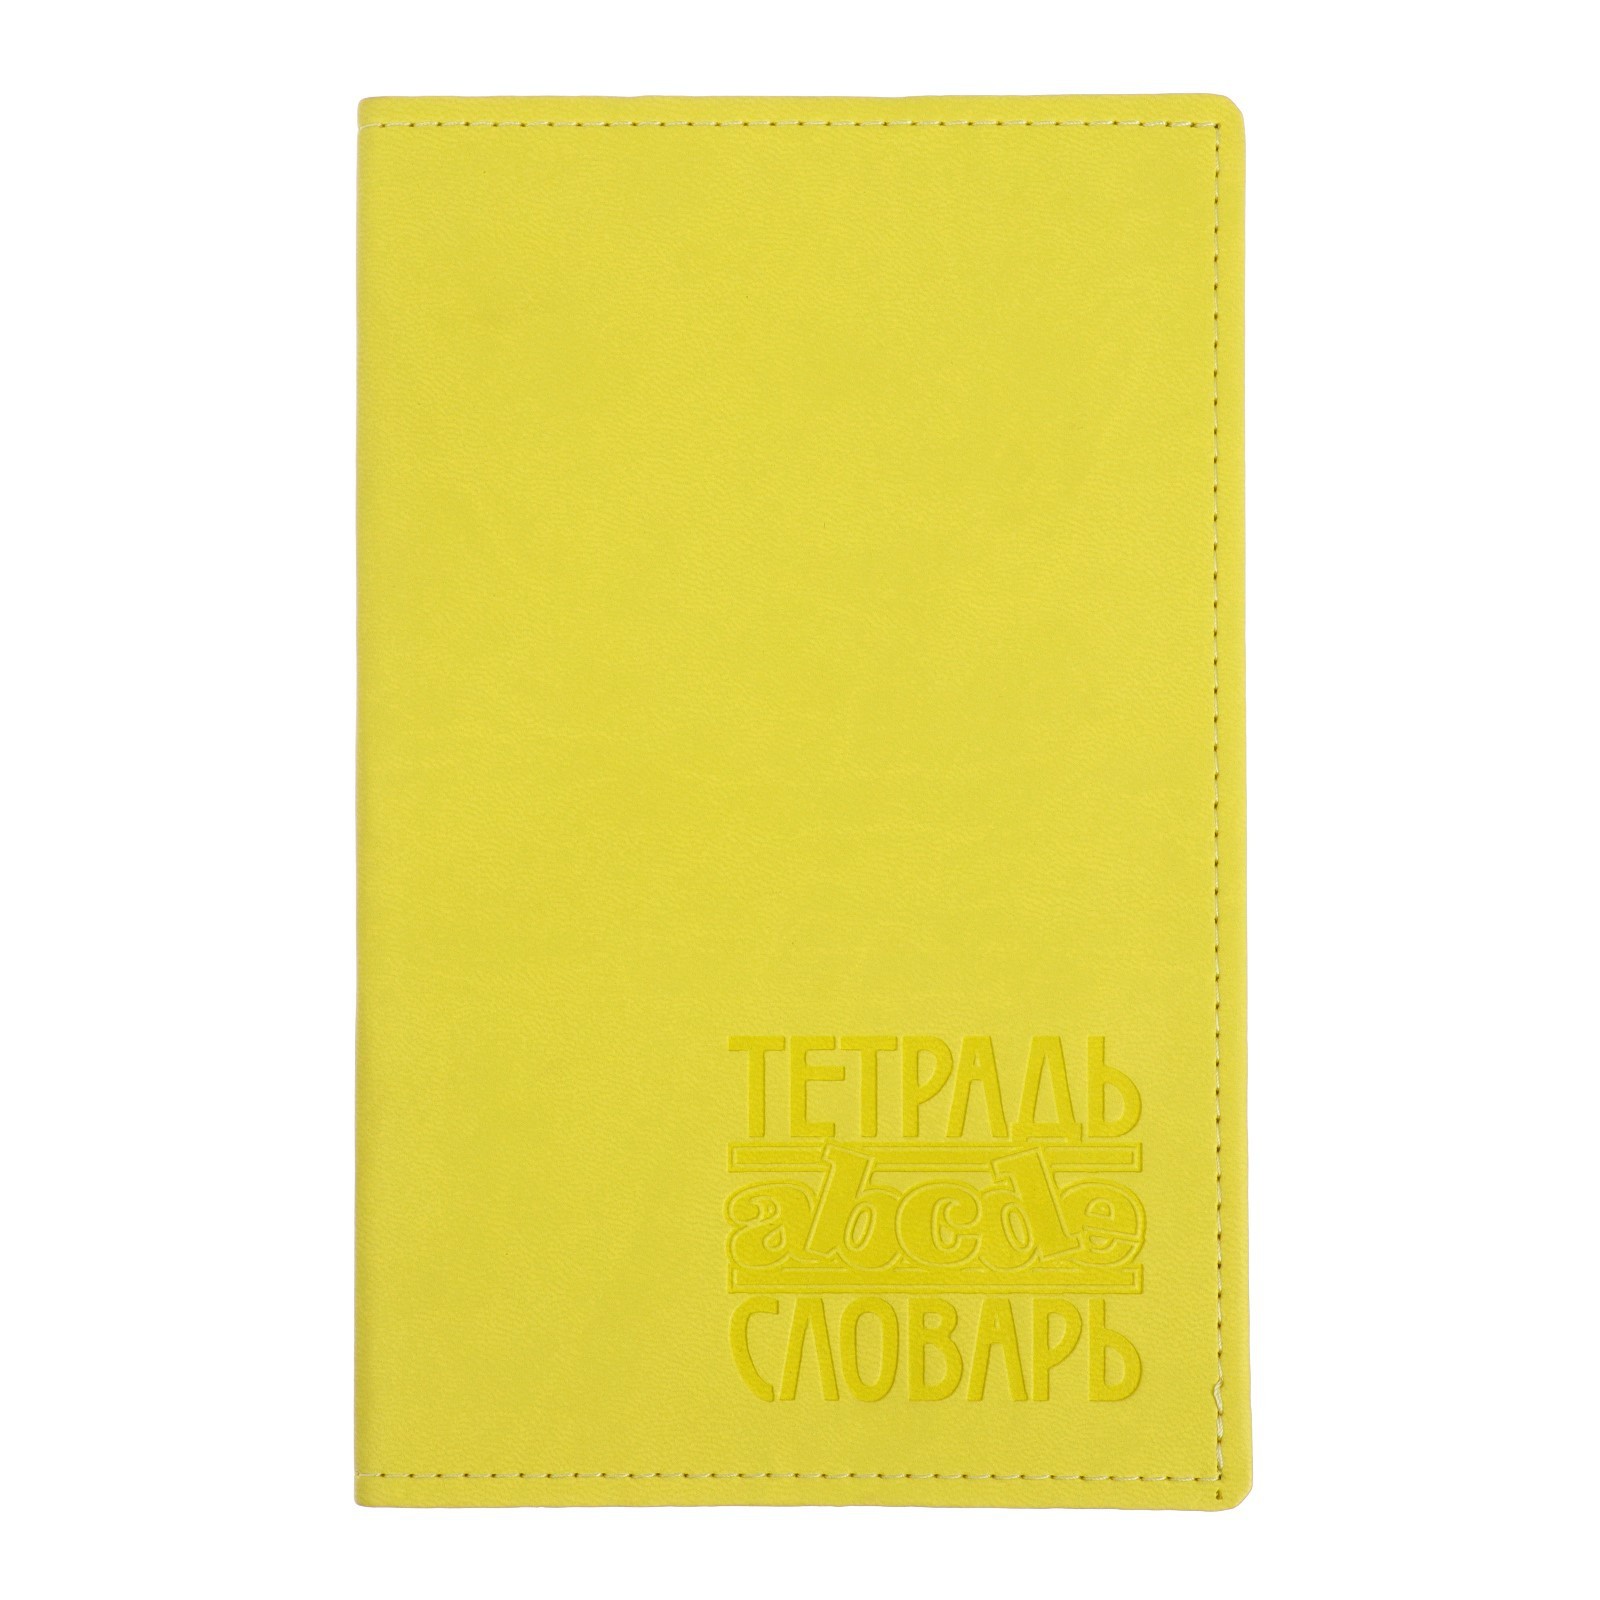 Тетрадь для записи иностранных слов Арго Книга Vivella ТС-123 F001, 48 листов, желтый